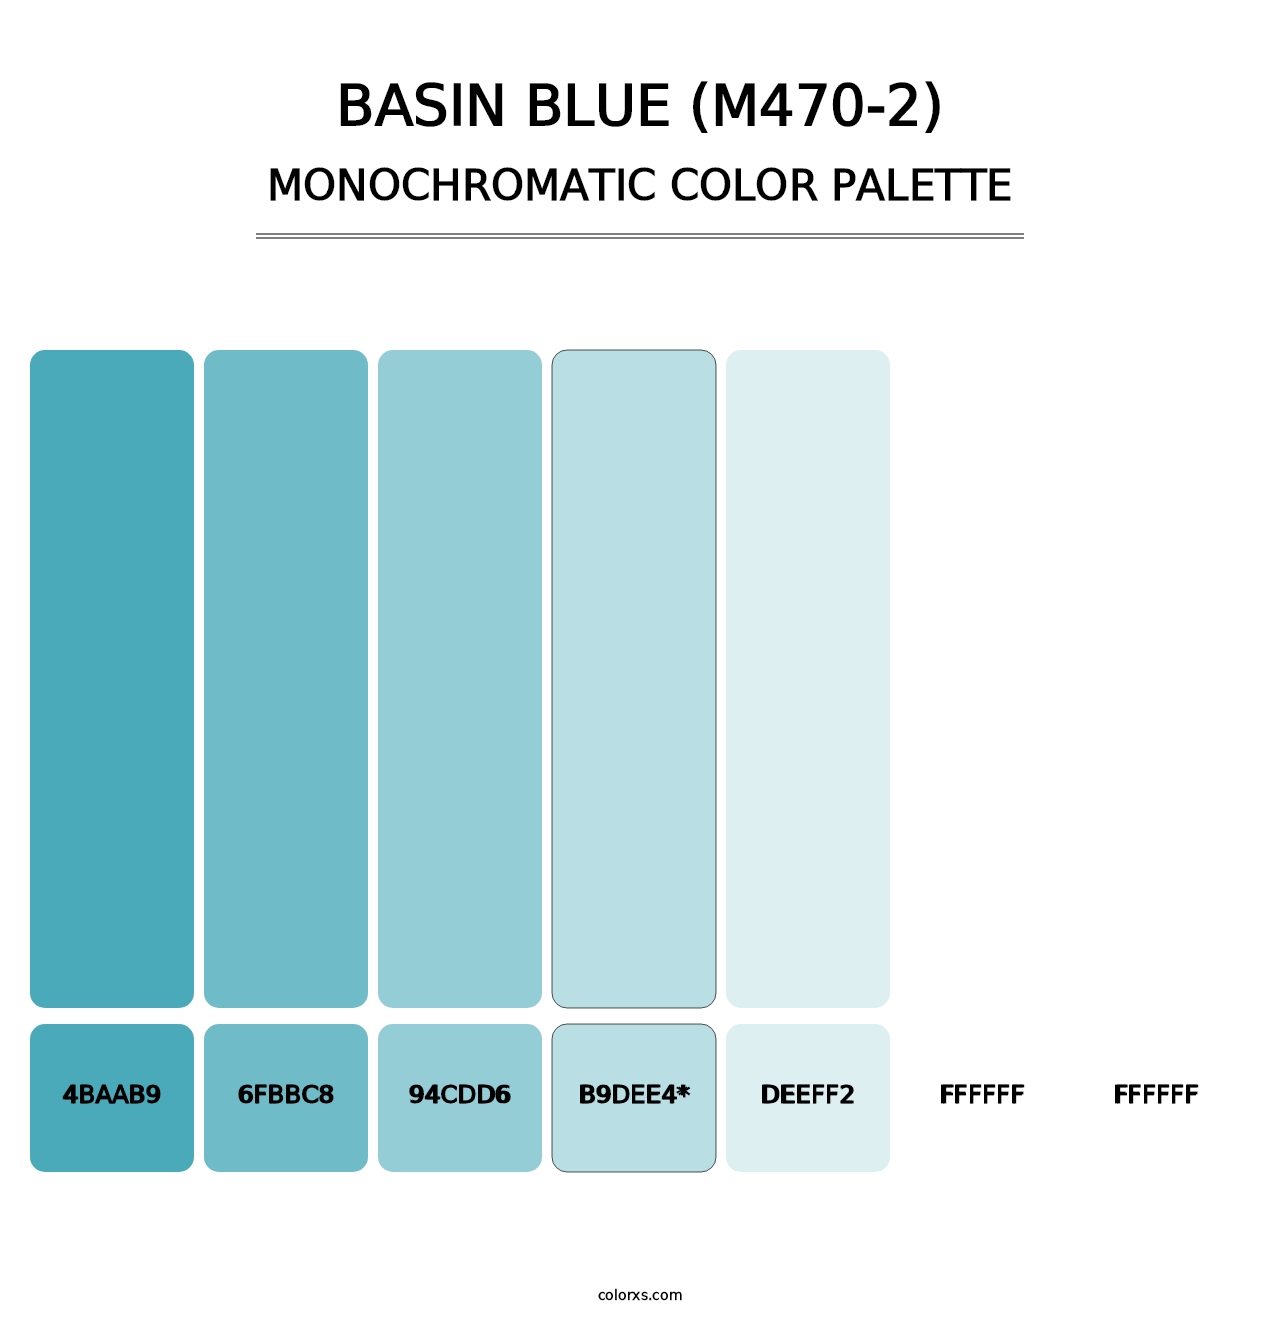 Basin Blue (M470-2) - Monochromatic Color Palette